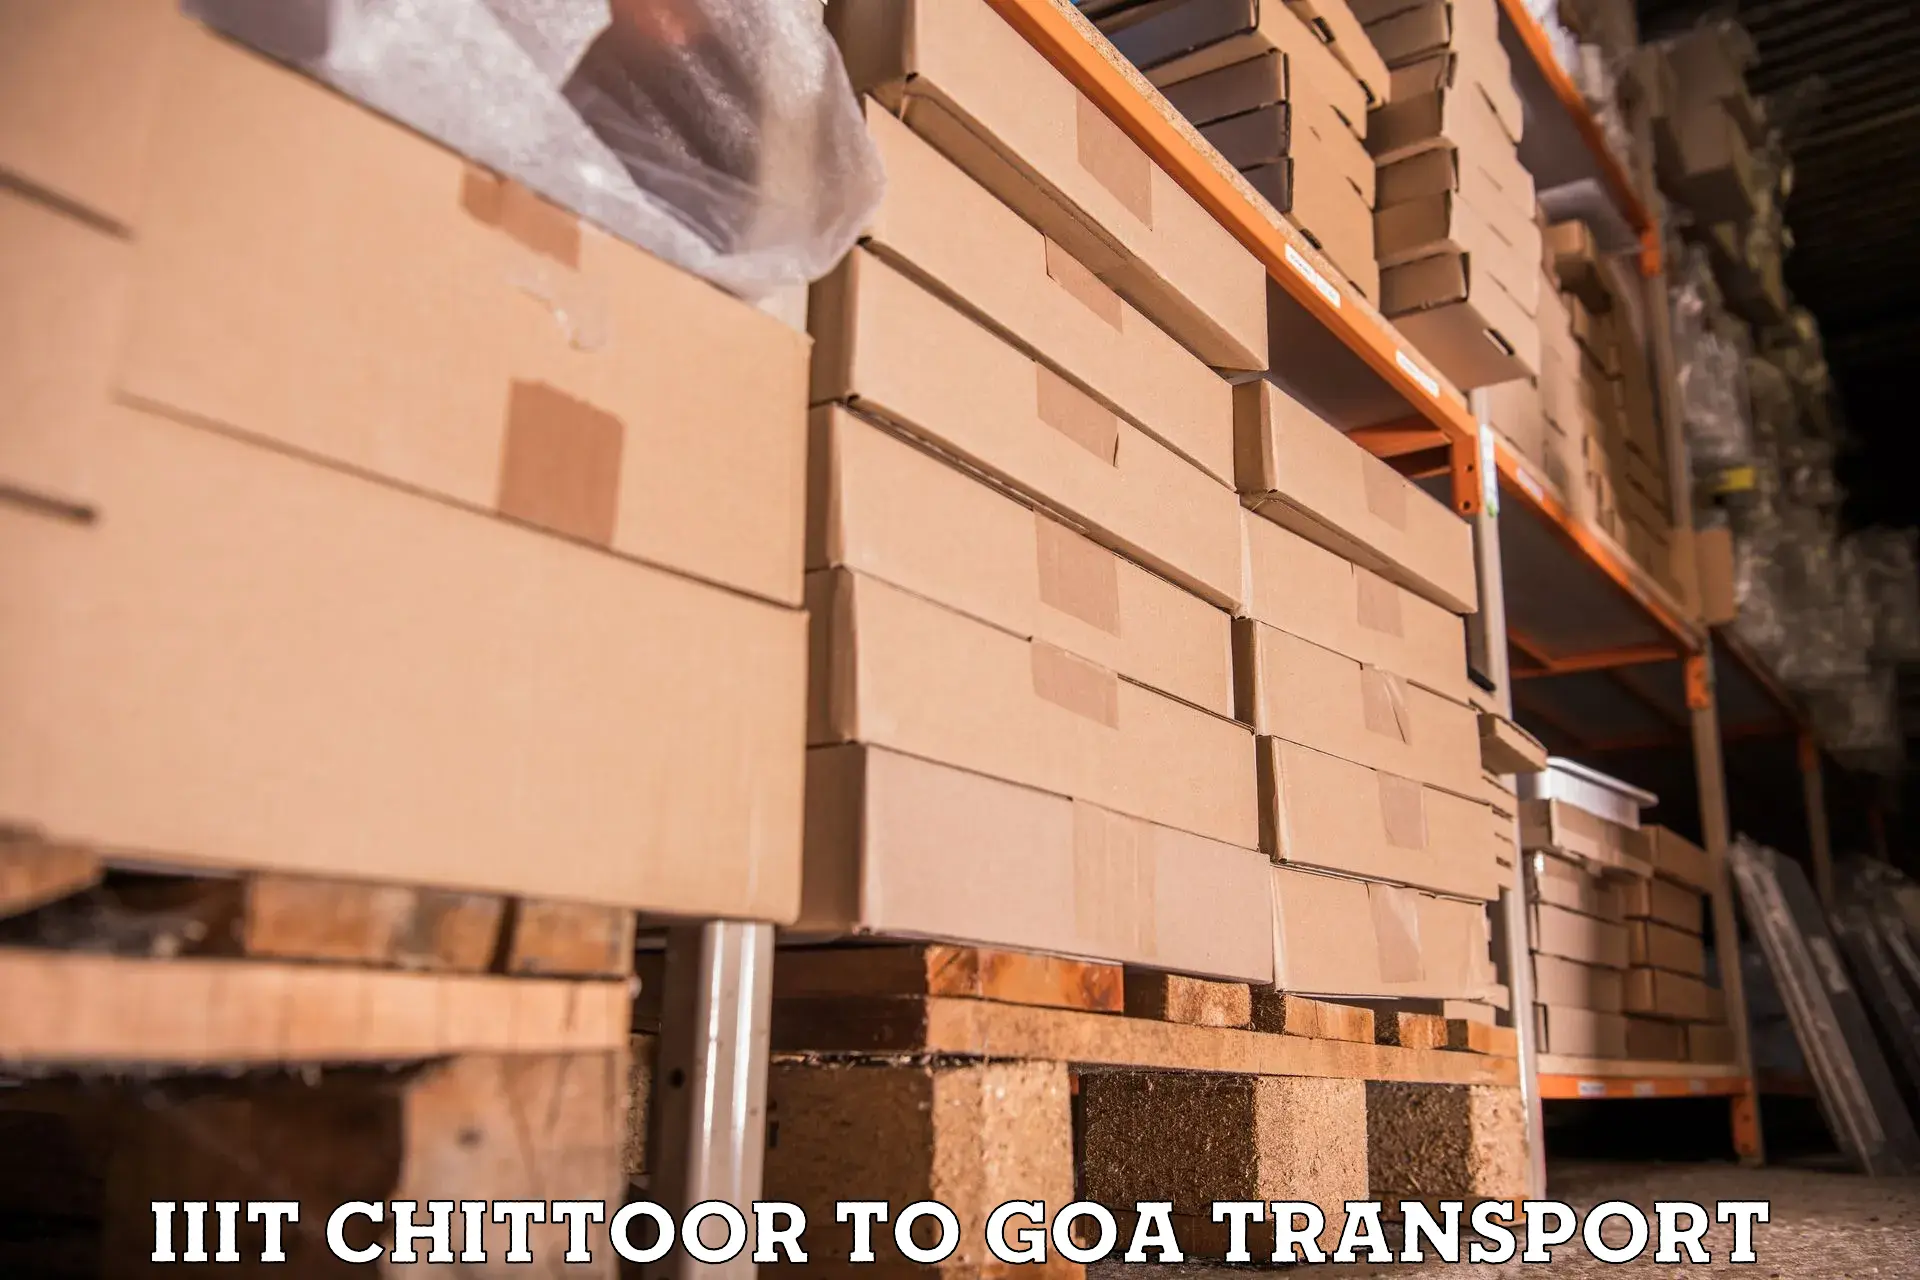 Parcel transport services in IIIT Chittoor to IIT Goa